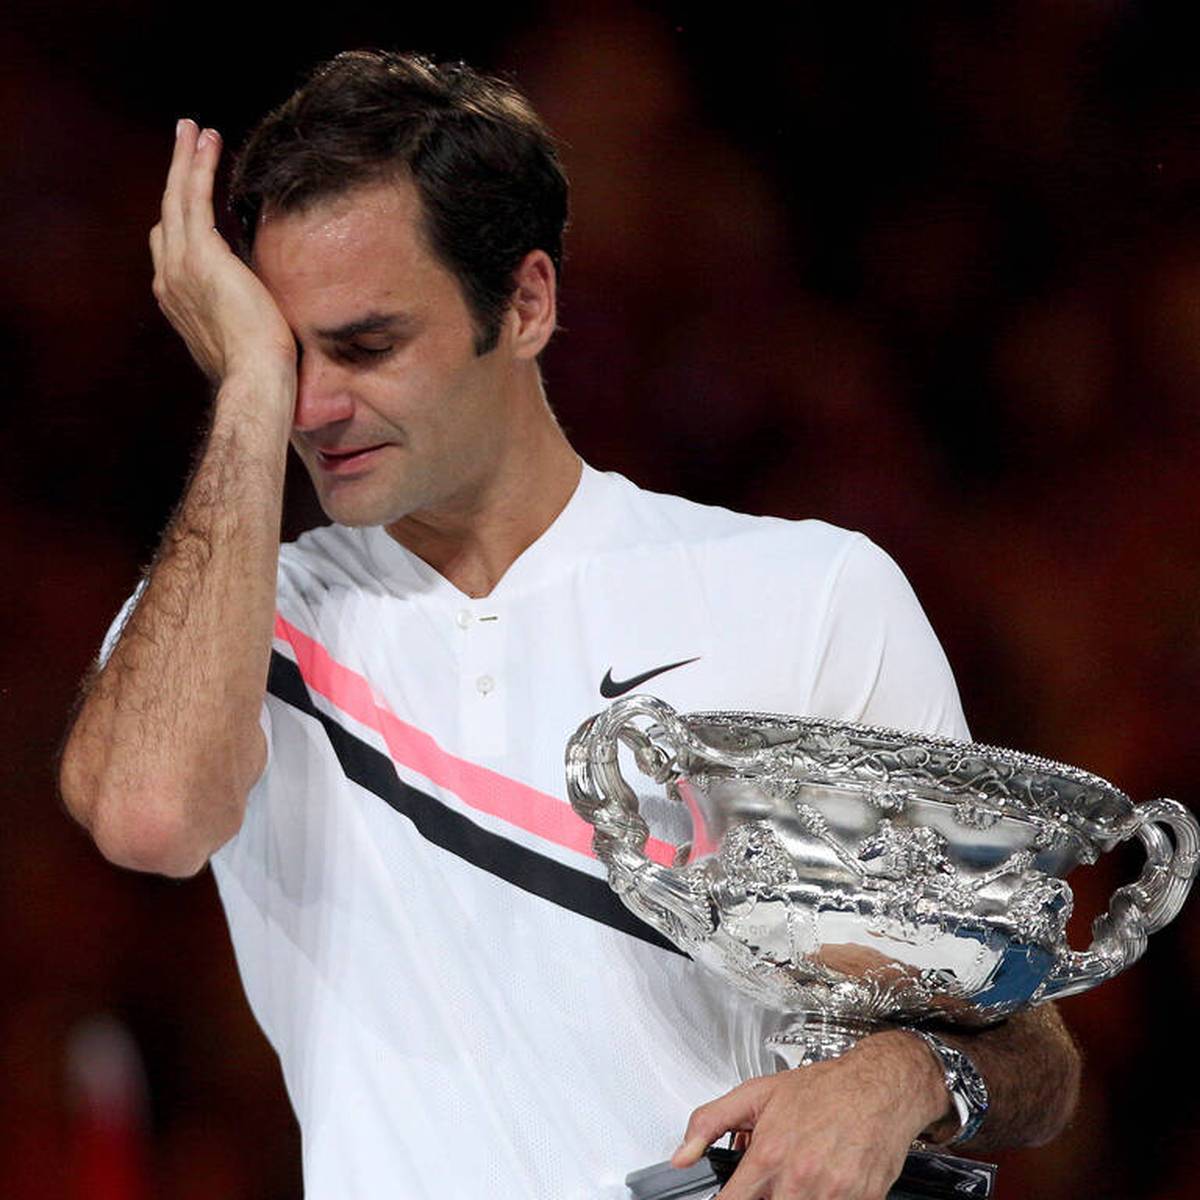 "Zu dir aufgeschaut": Ein Tennis-Ass huldigt Federer